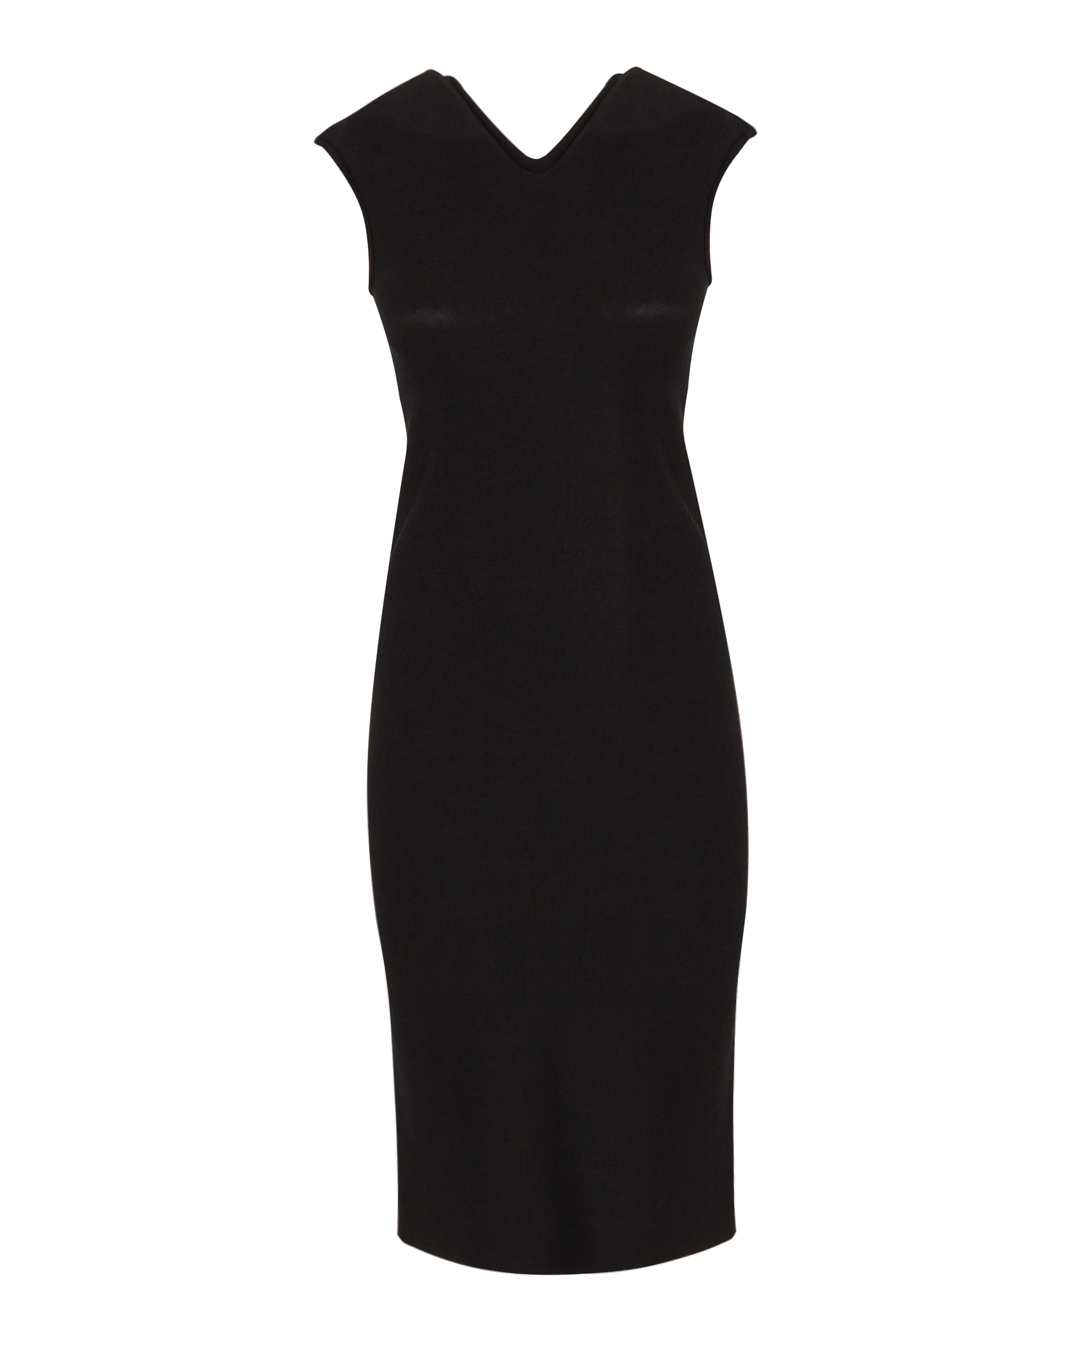 платье MRZ SS24-0014 черный xl, размер xl